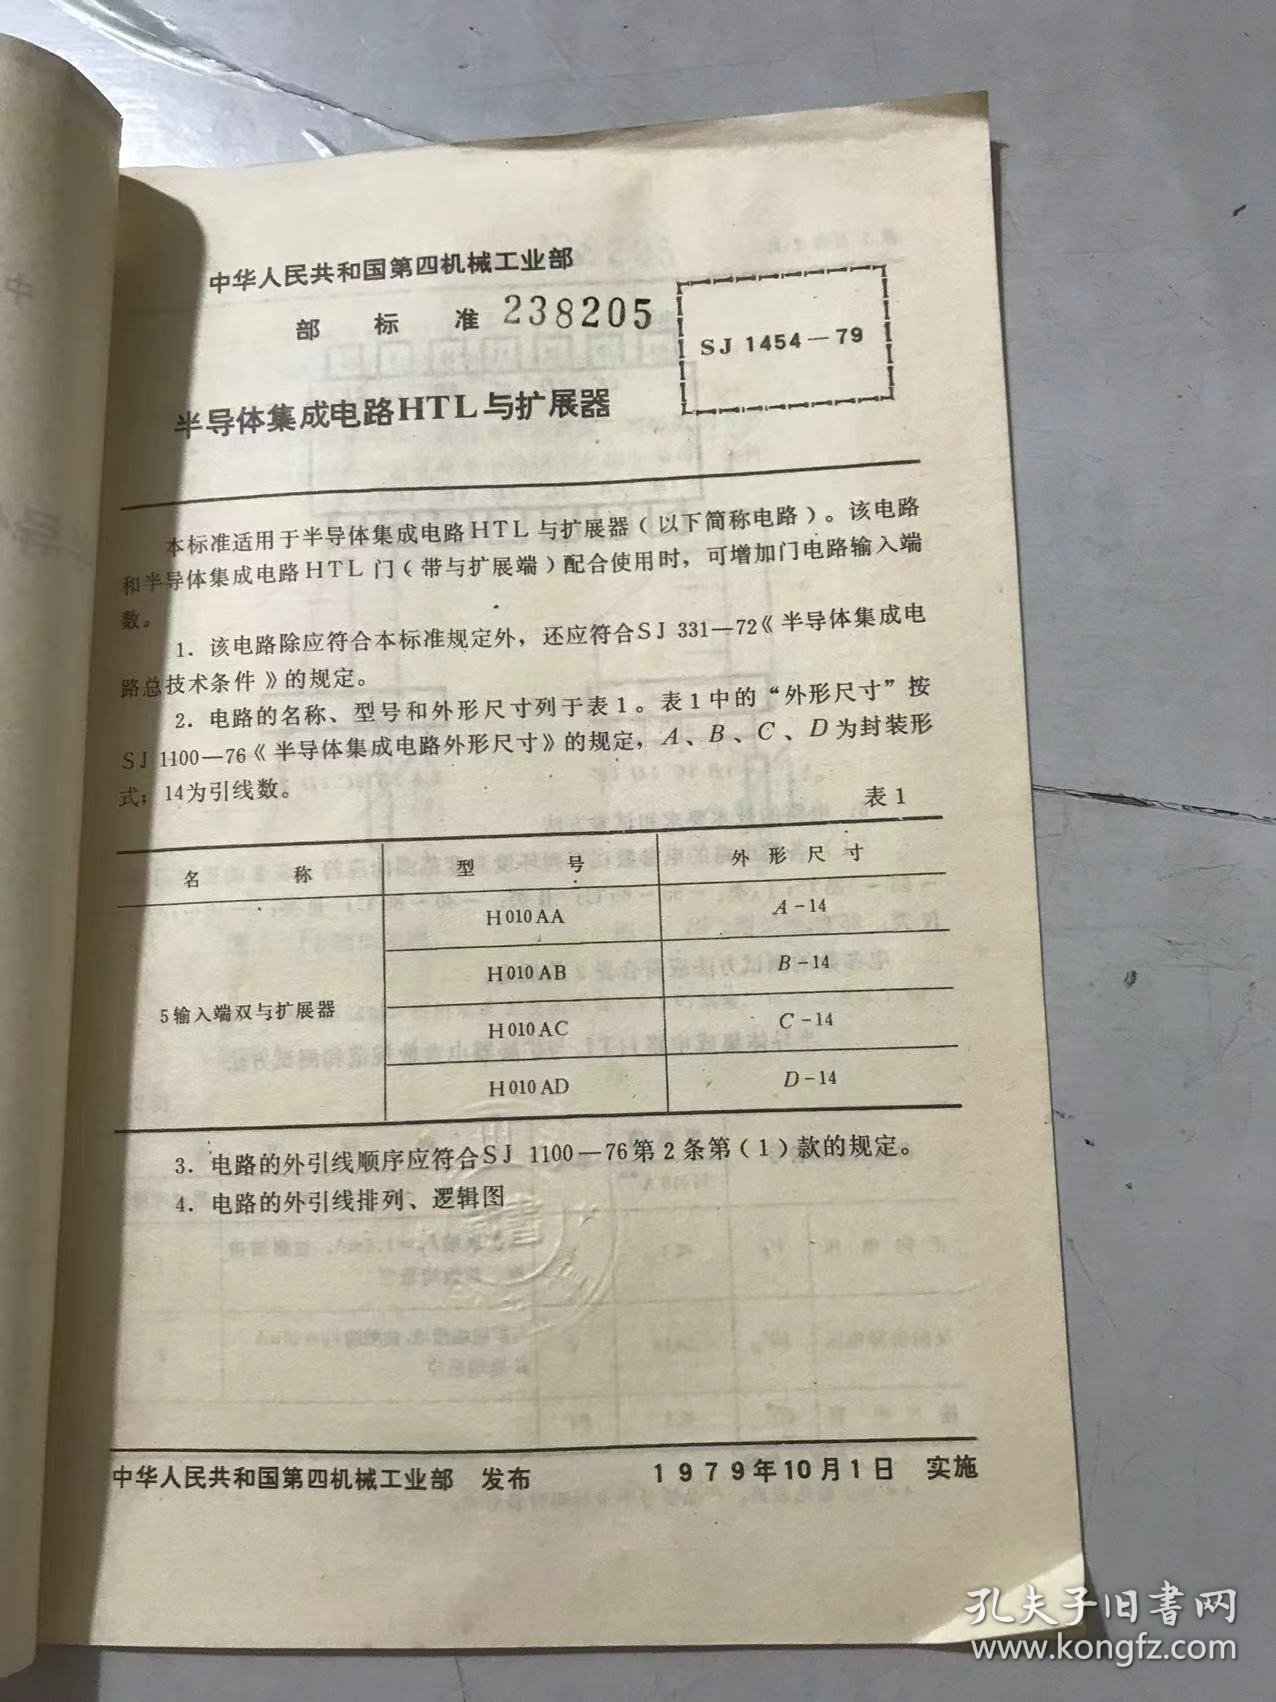 中华人民共和国第四机械工业部部标准《半导体集成电路HTL与扩展器 SJ 1454-79（暂行）》 。